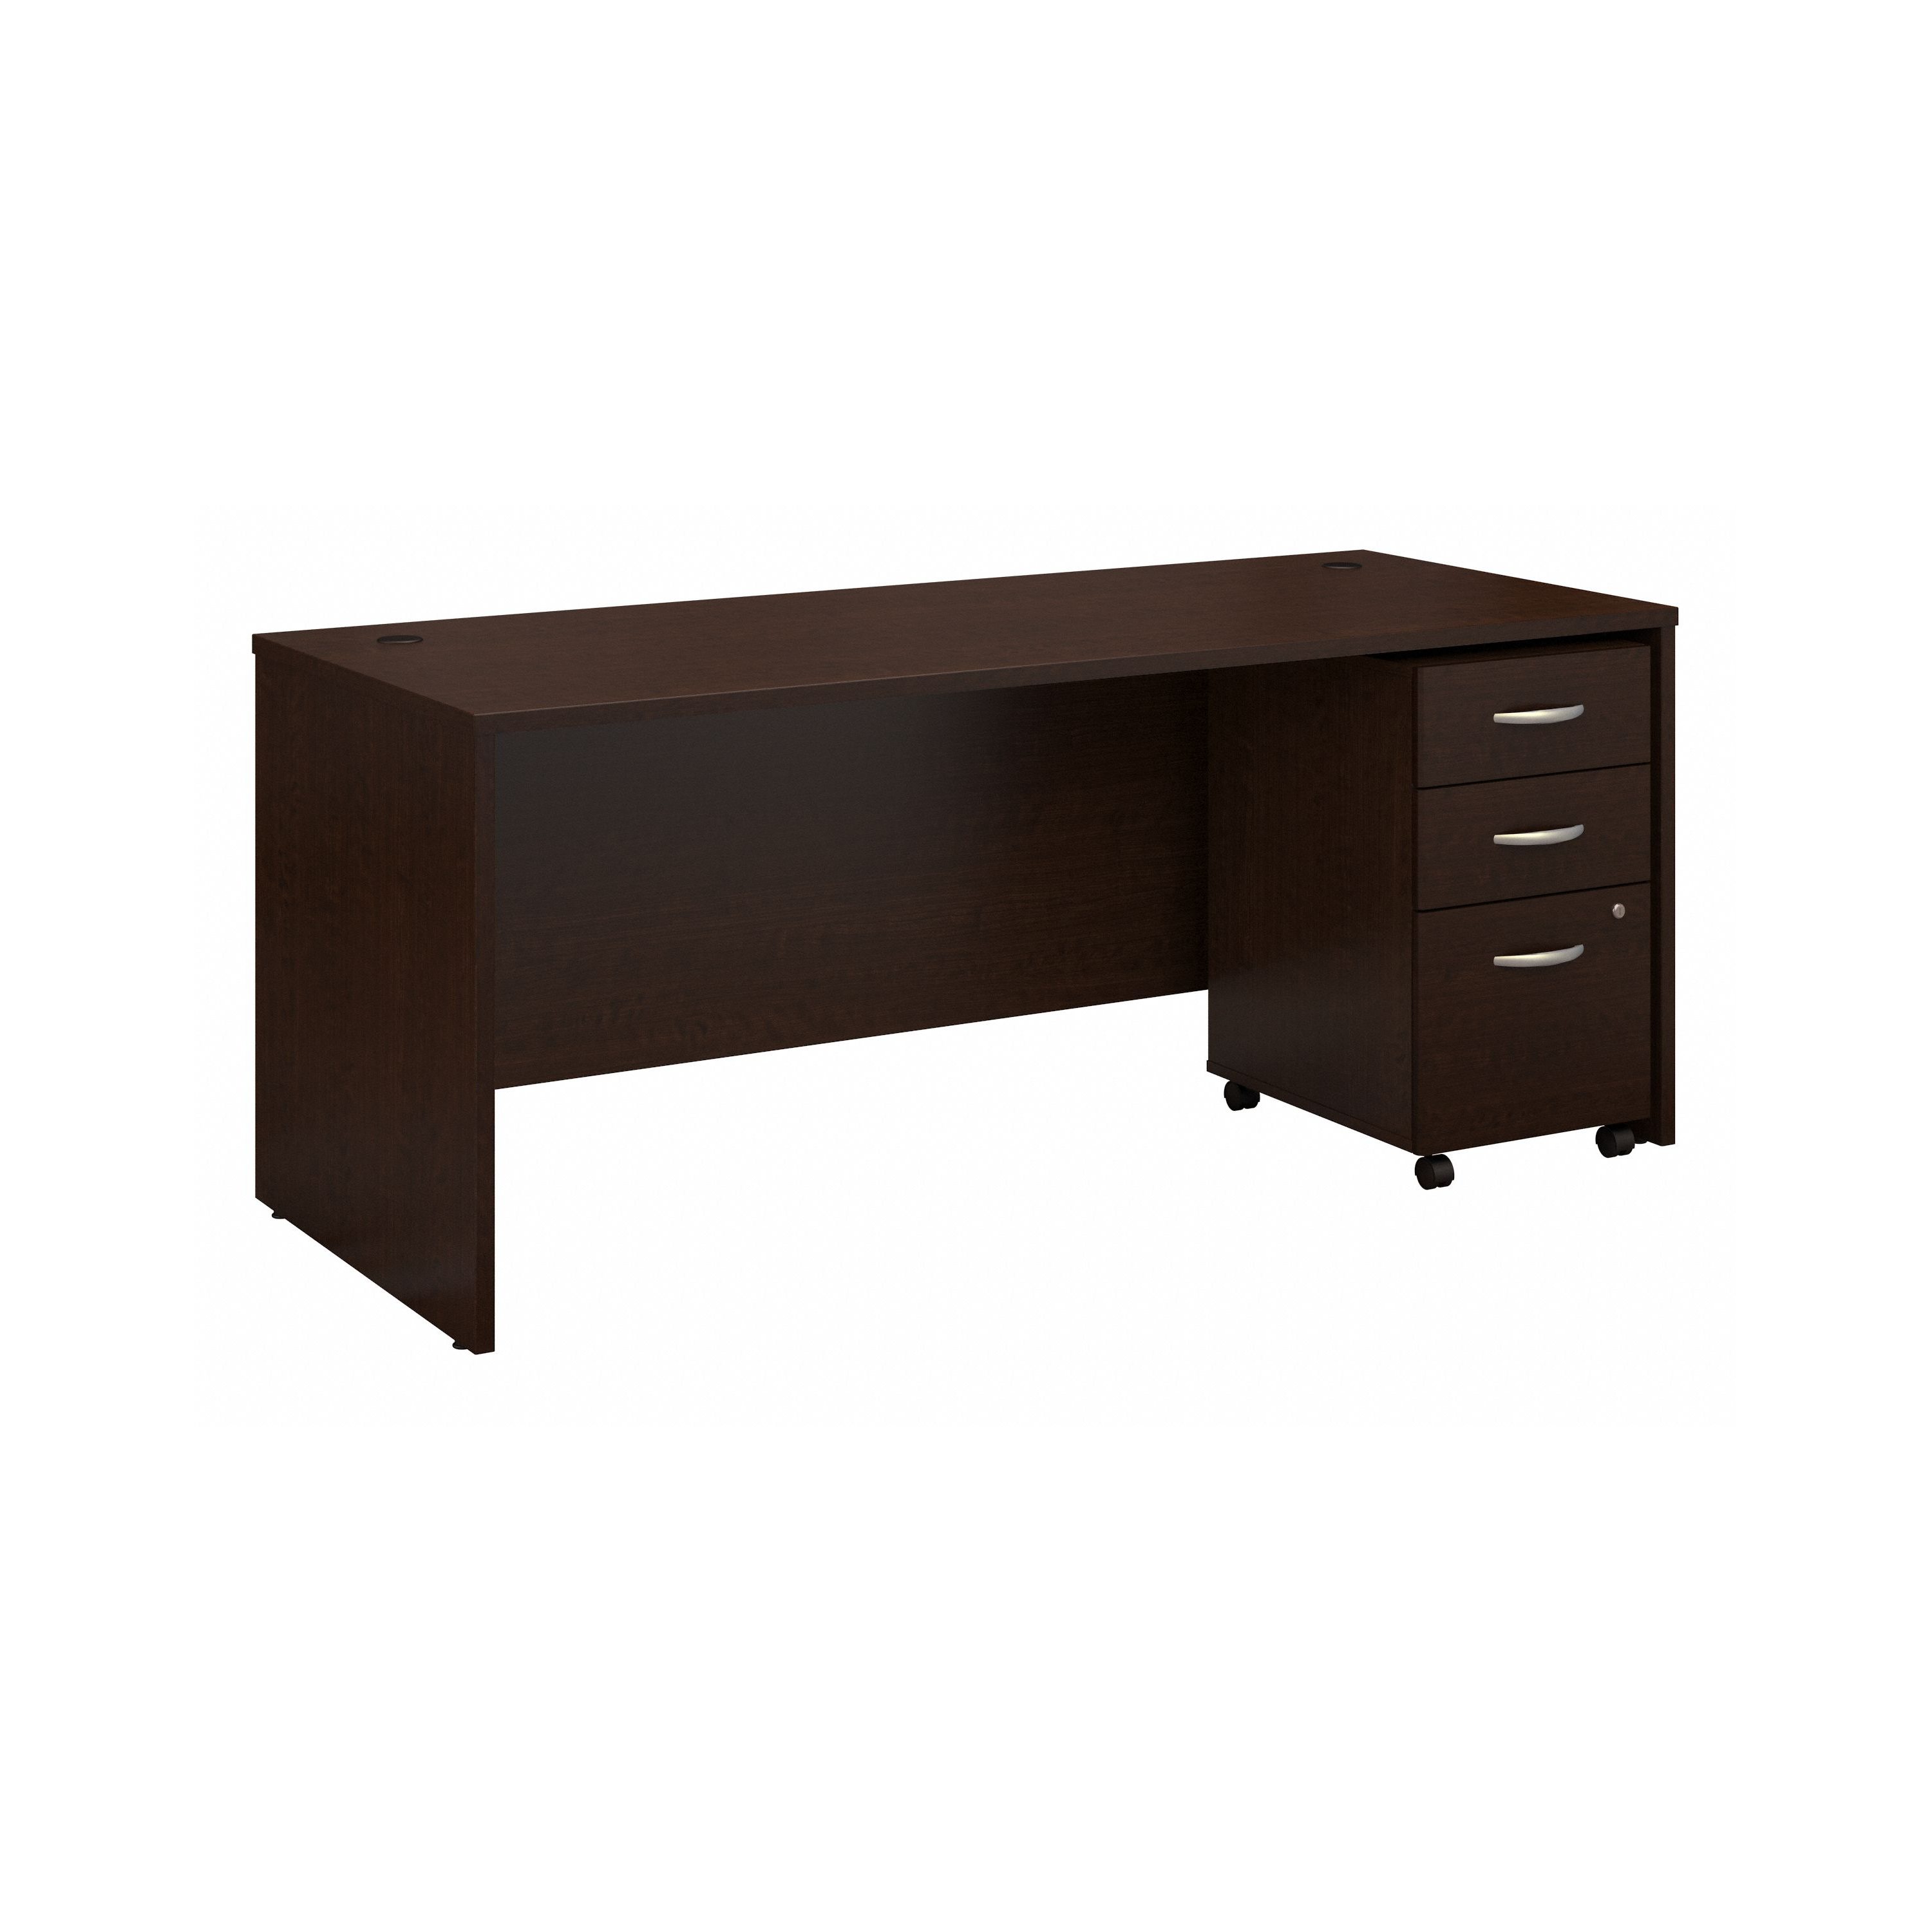 Shop Bush Business Furniture Series C 72W x 30D Office Desk with Mobile File Cabinet 02 SRC113MRSU #color_mocha cherry